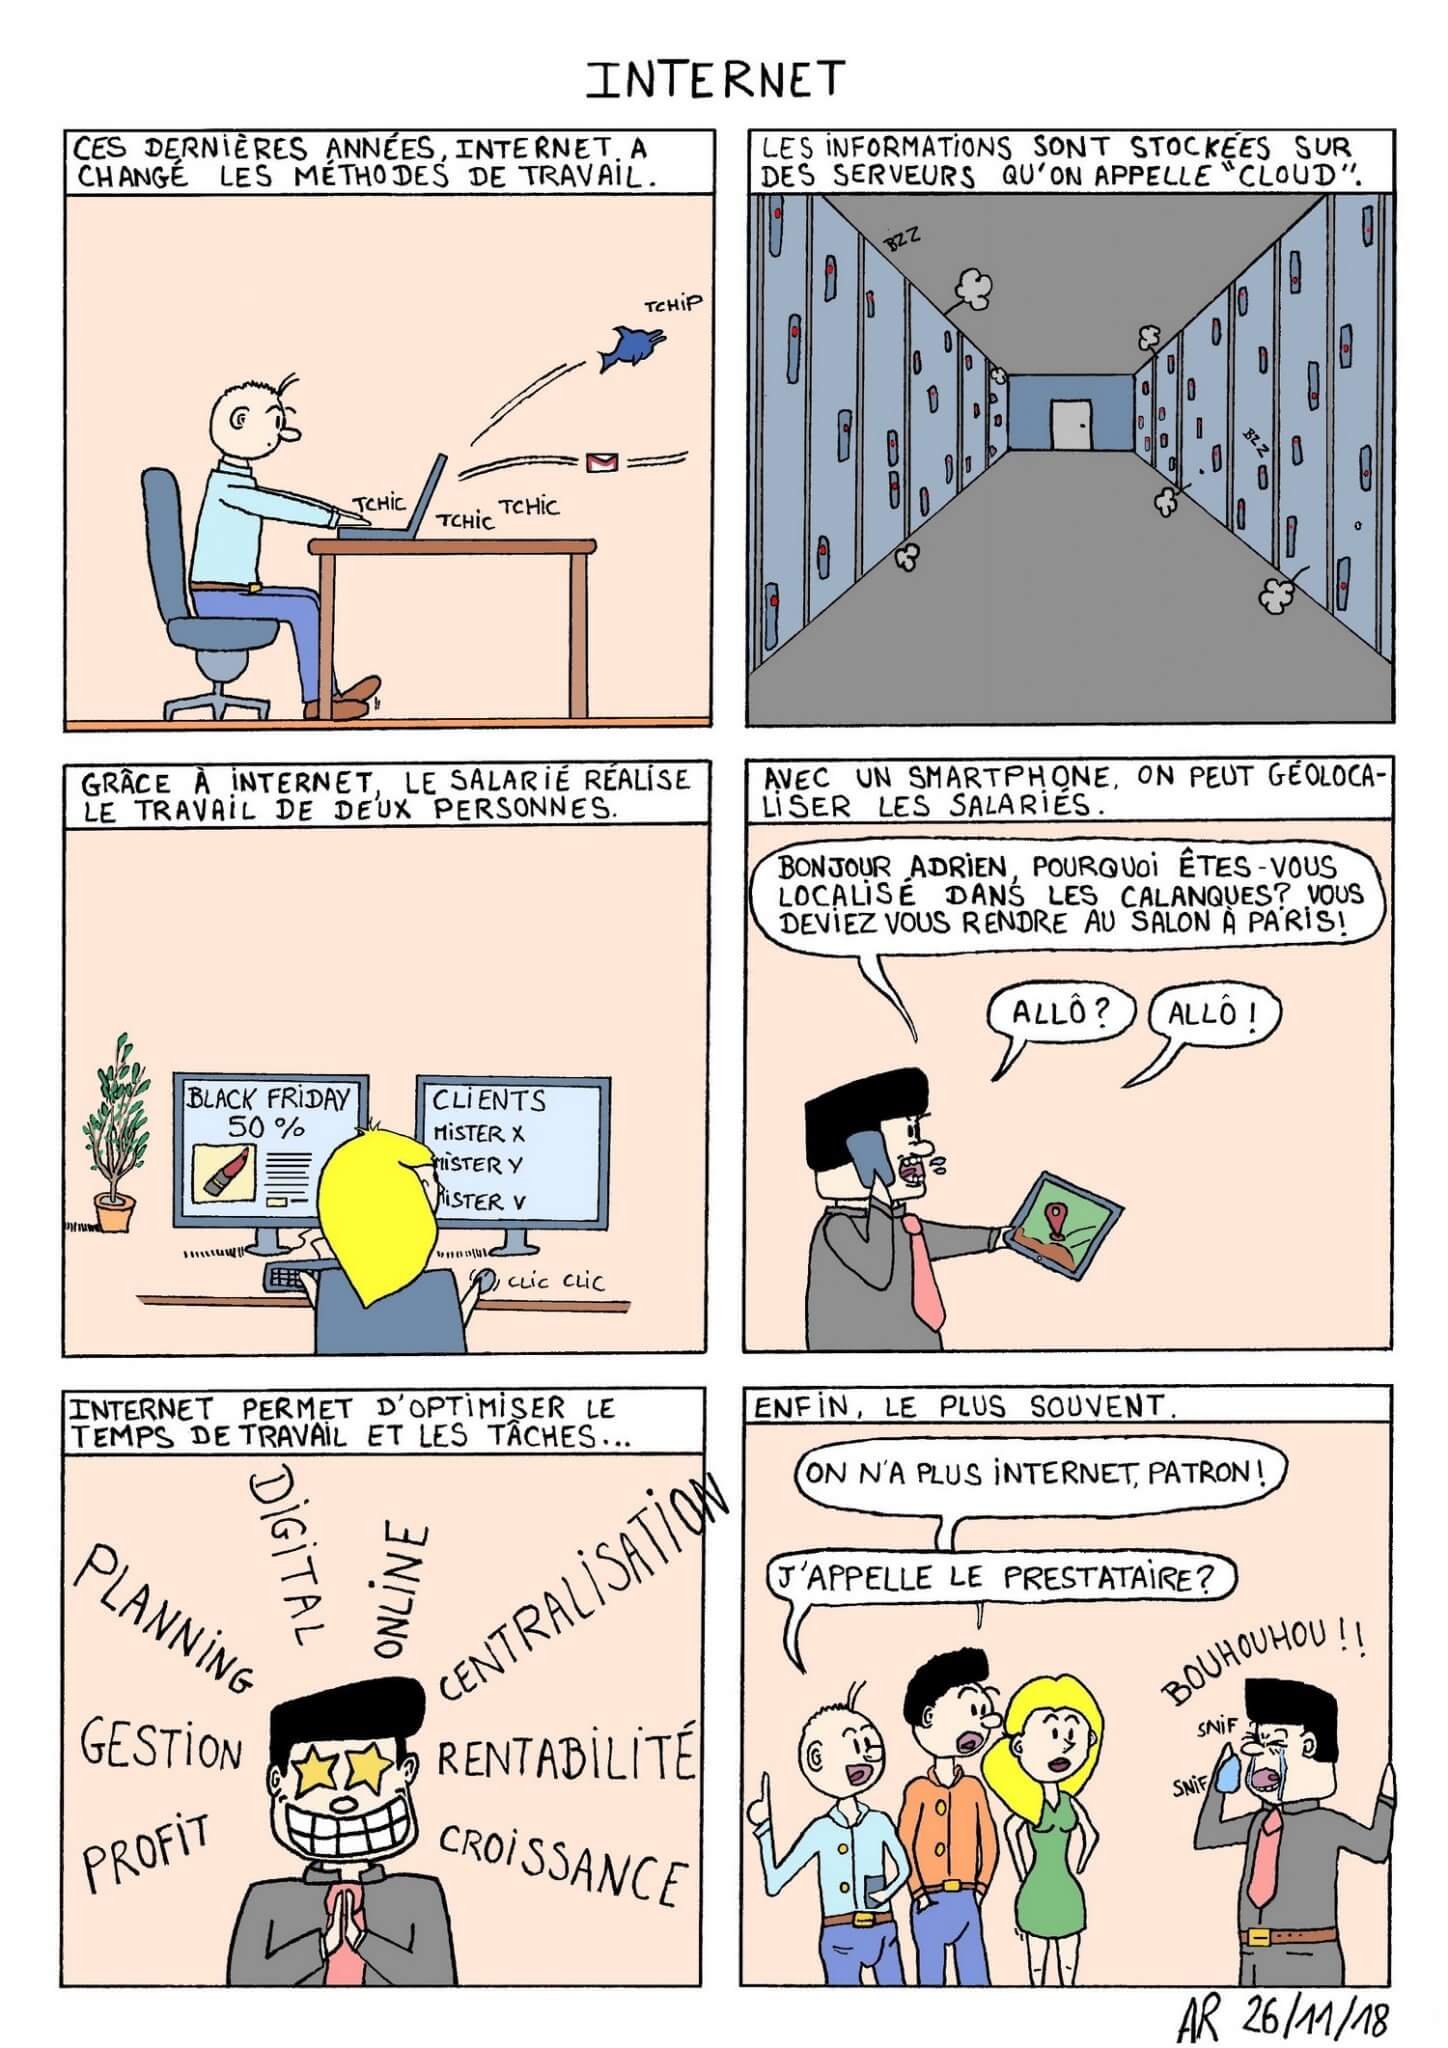 bande dessinée en ligne - Humour sur Internet dans les entreprises. web toon.